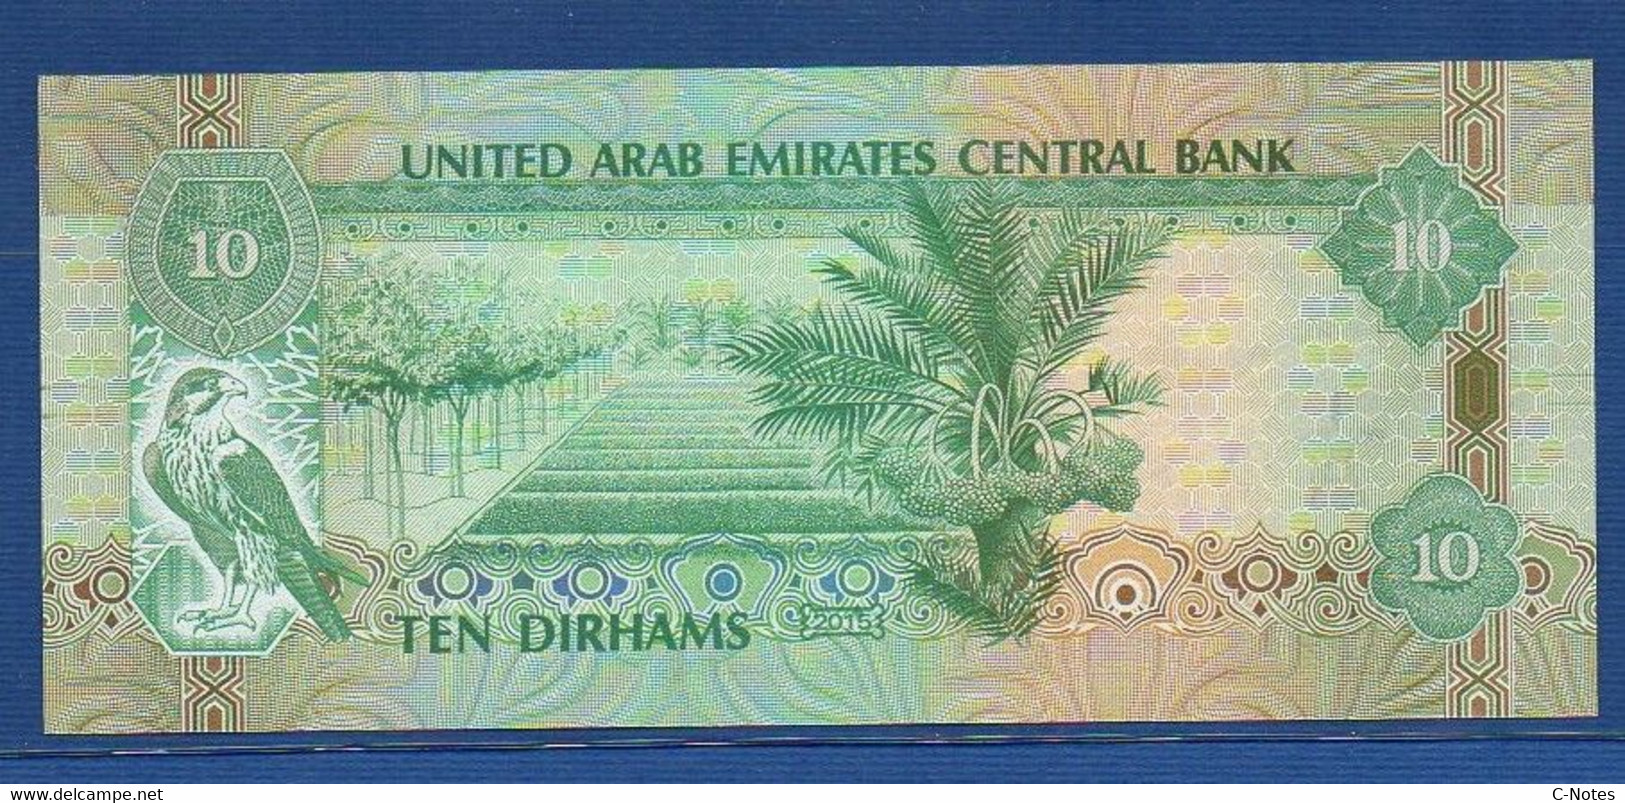 UNITED ARAB EMIRATES - P.27d – 10 DIRHAMS 2015 UNC Serie 158831182 - Emirats Arabes Unis